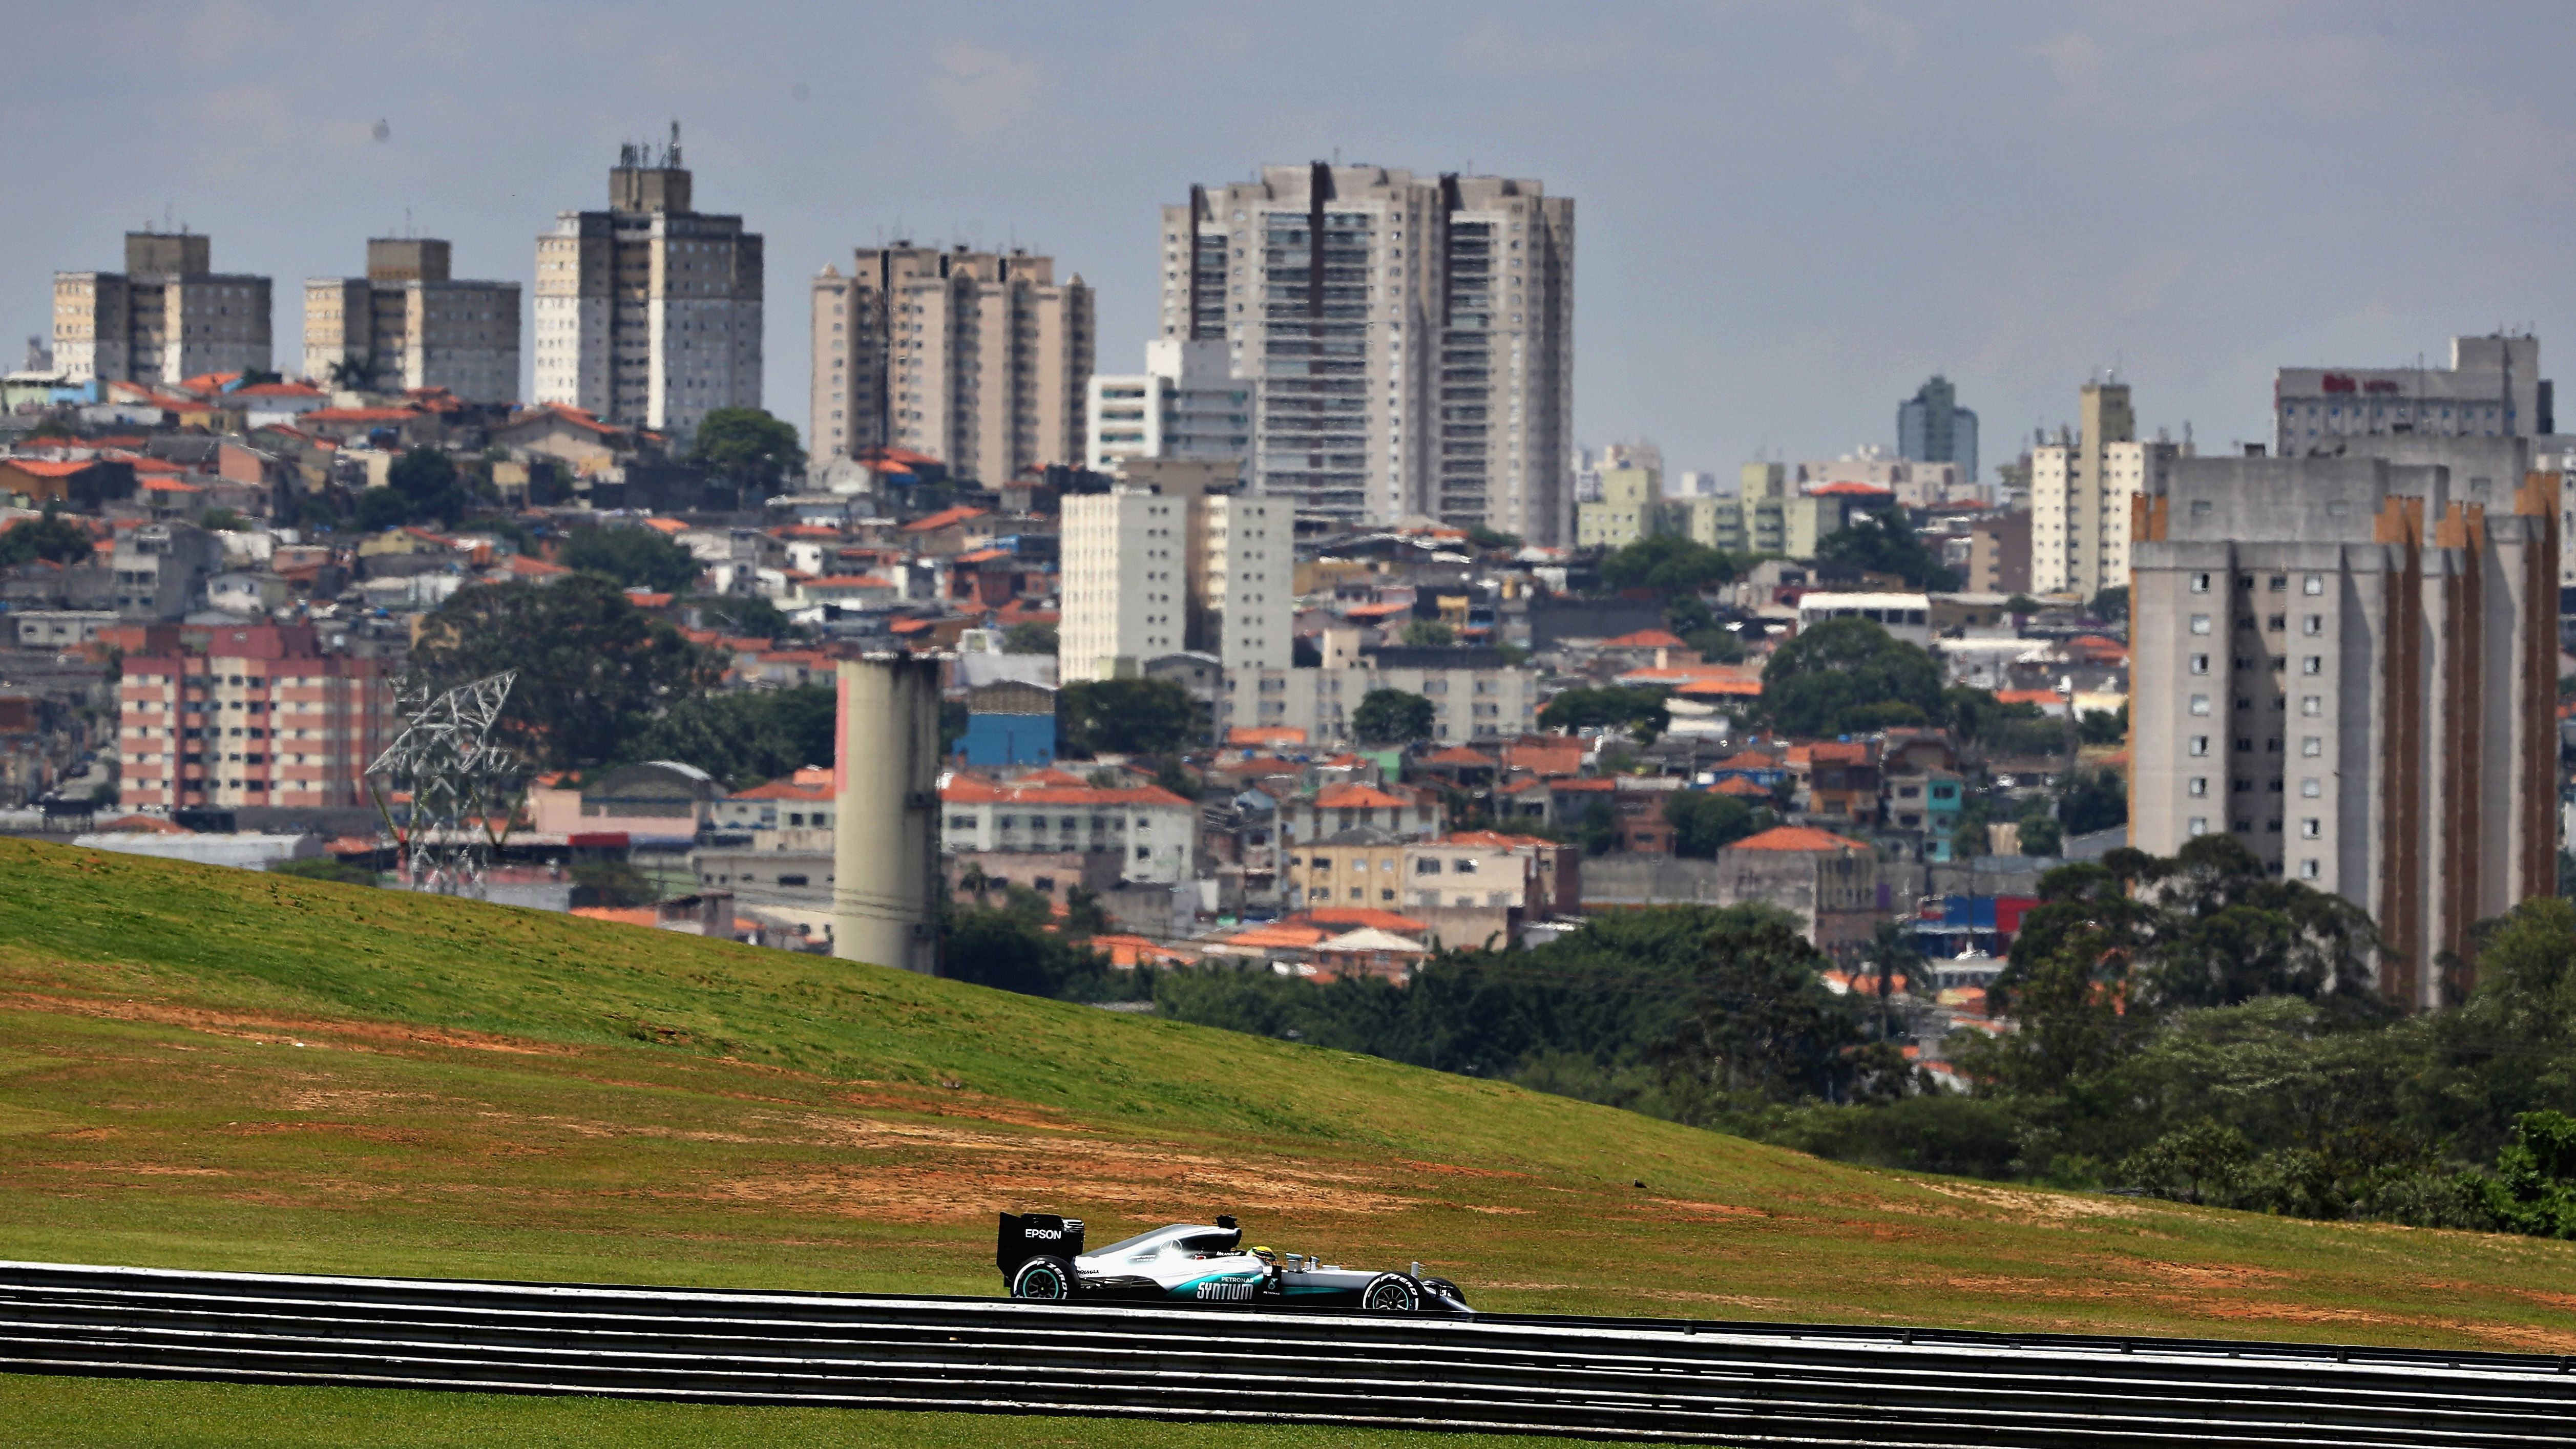 
                <strong>Autódromo José Carlos Pace Sao Paulo, Brasilien </strong><br>
                Die Rennstrecke im Großraum der Millionenstadt Sao Paulo ist für dramatische Finals bekannt: Auf dem 4,3 Kilometer langen Kurs feierte Lewis Hamilton im Jahr 2008 die spannendste Fahrer-Weltmeisterschaft der Geschichte, als der damalige McLaren-Pilot erst in der letzten Kurve durch ein Überholmanöver sich den Titel vor Felipe Massa sicherte.
              